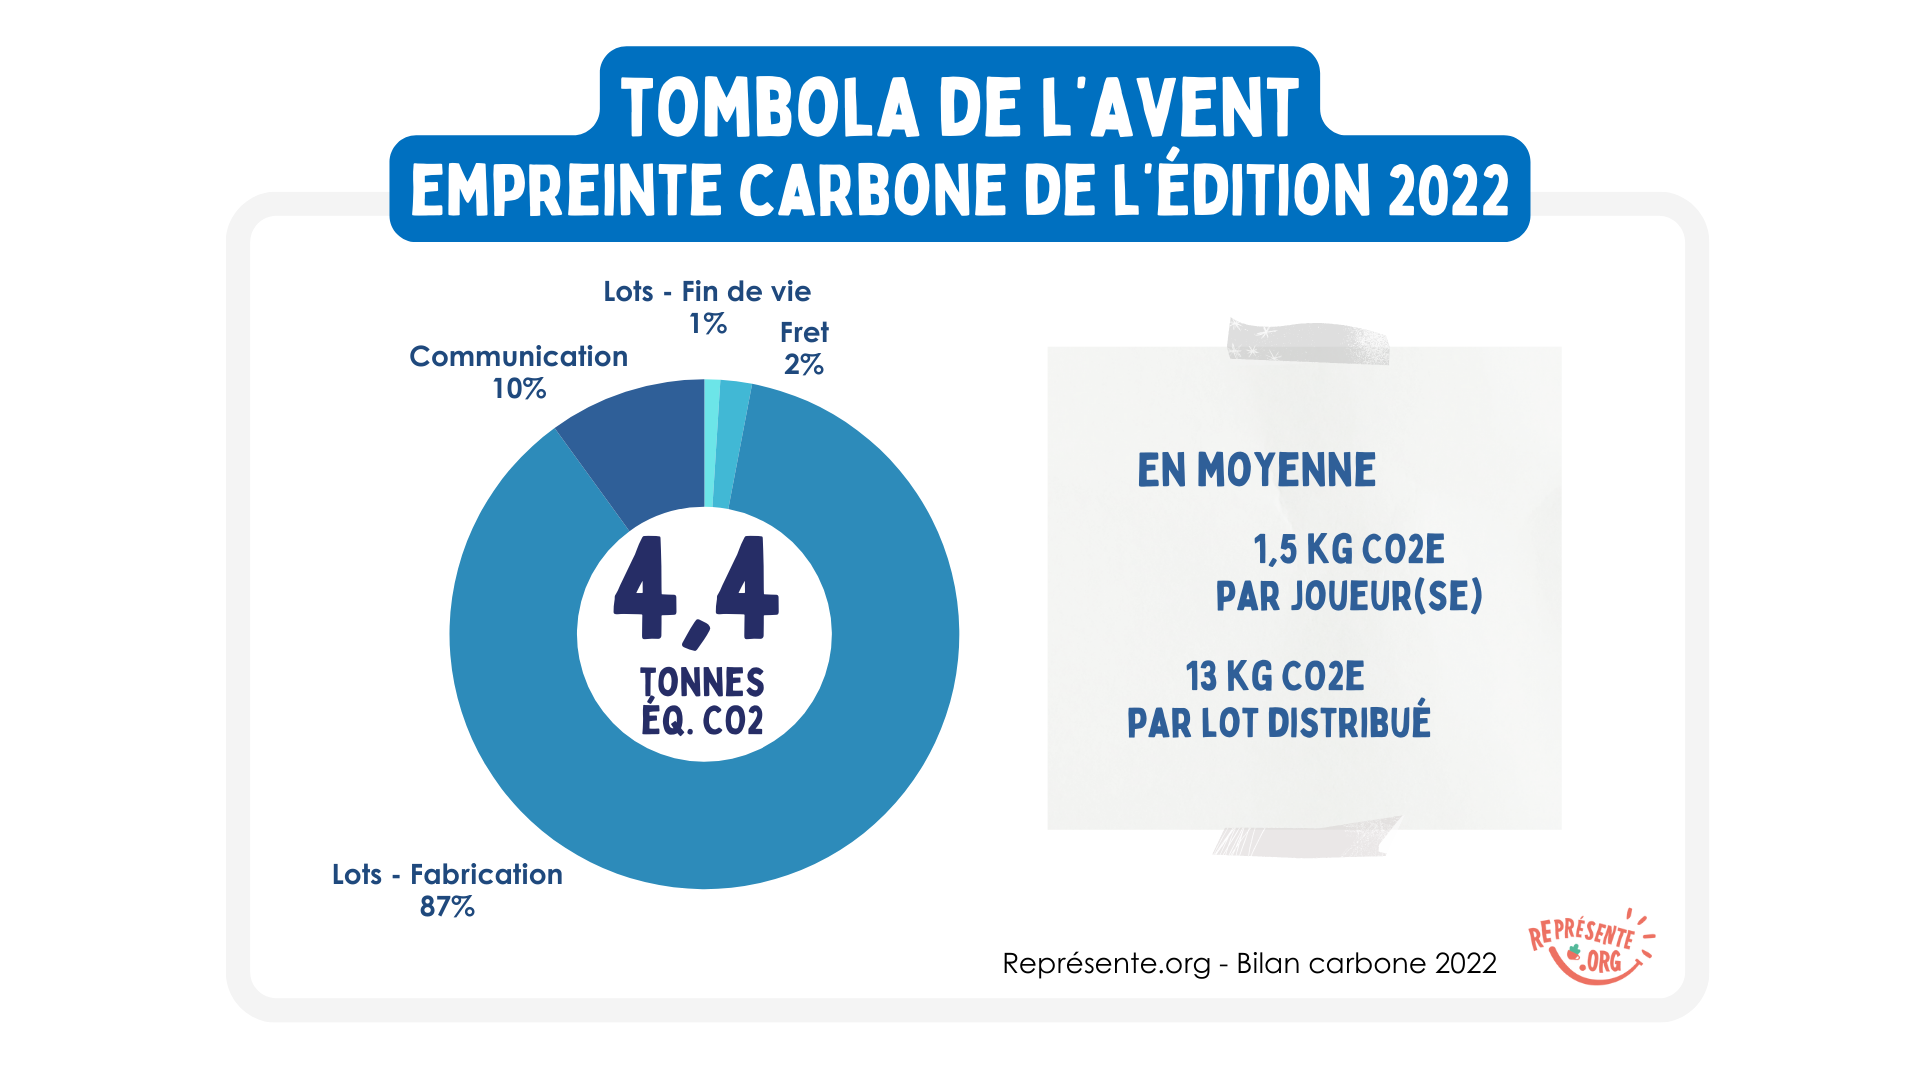 Bilan carbone Représente.org - LAaTombola de l'Avent 2022